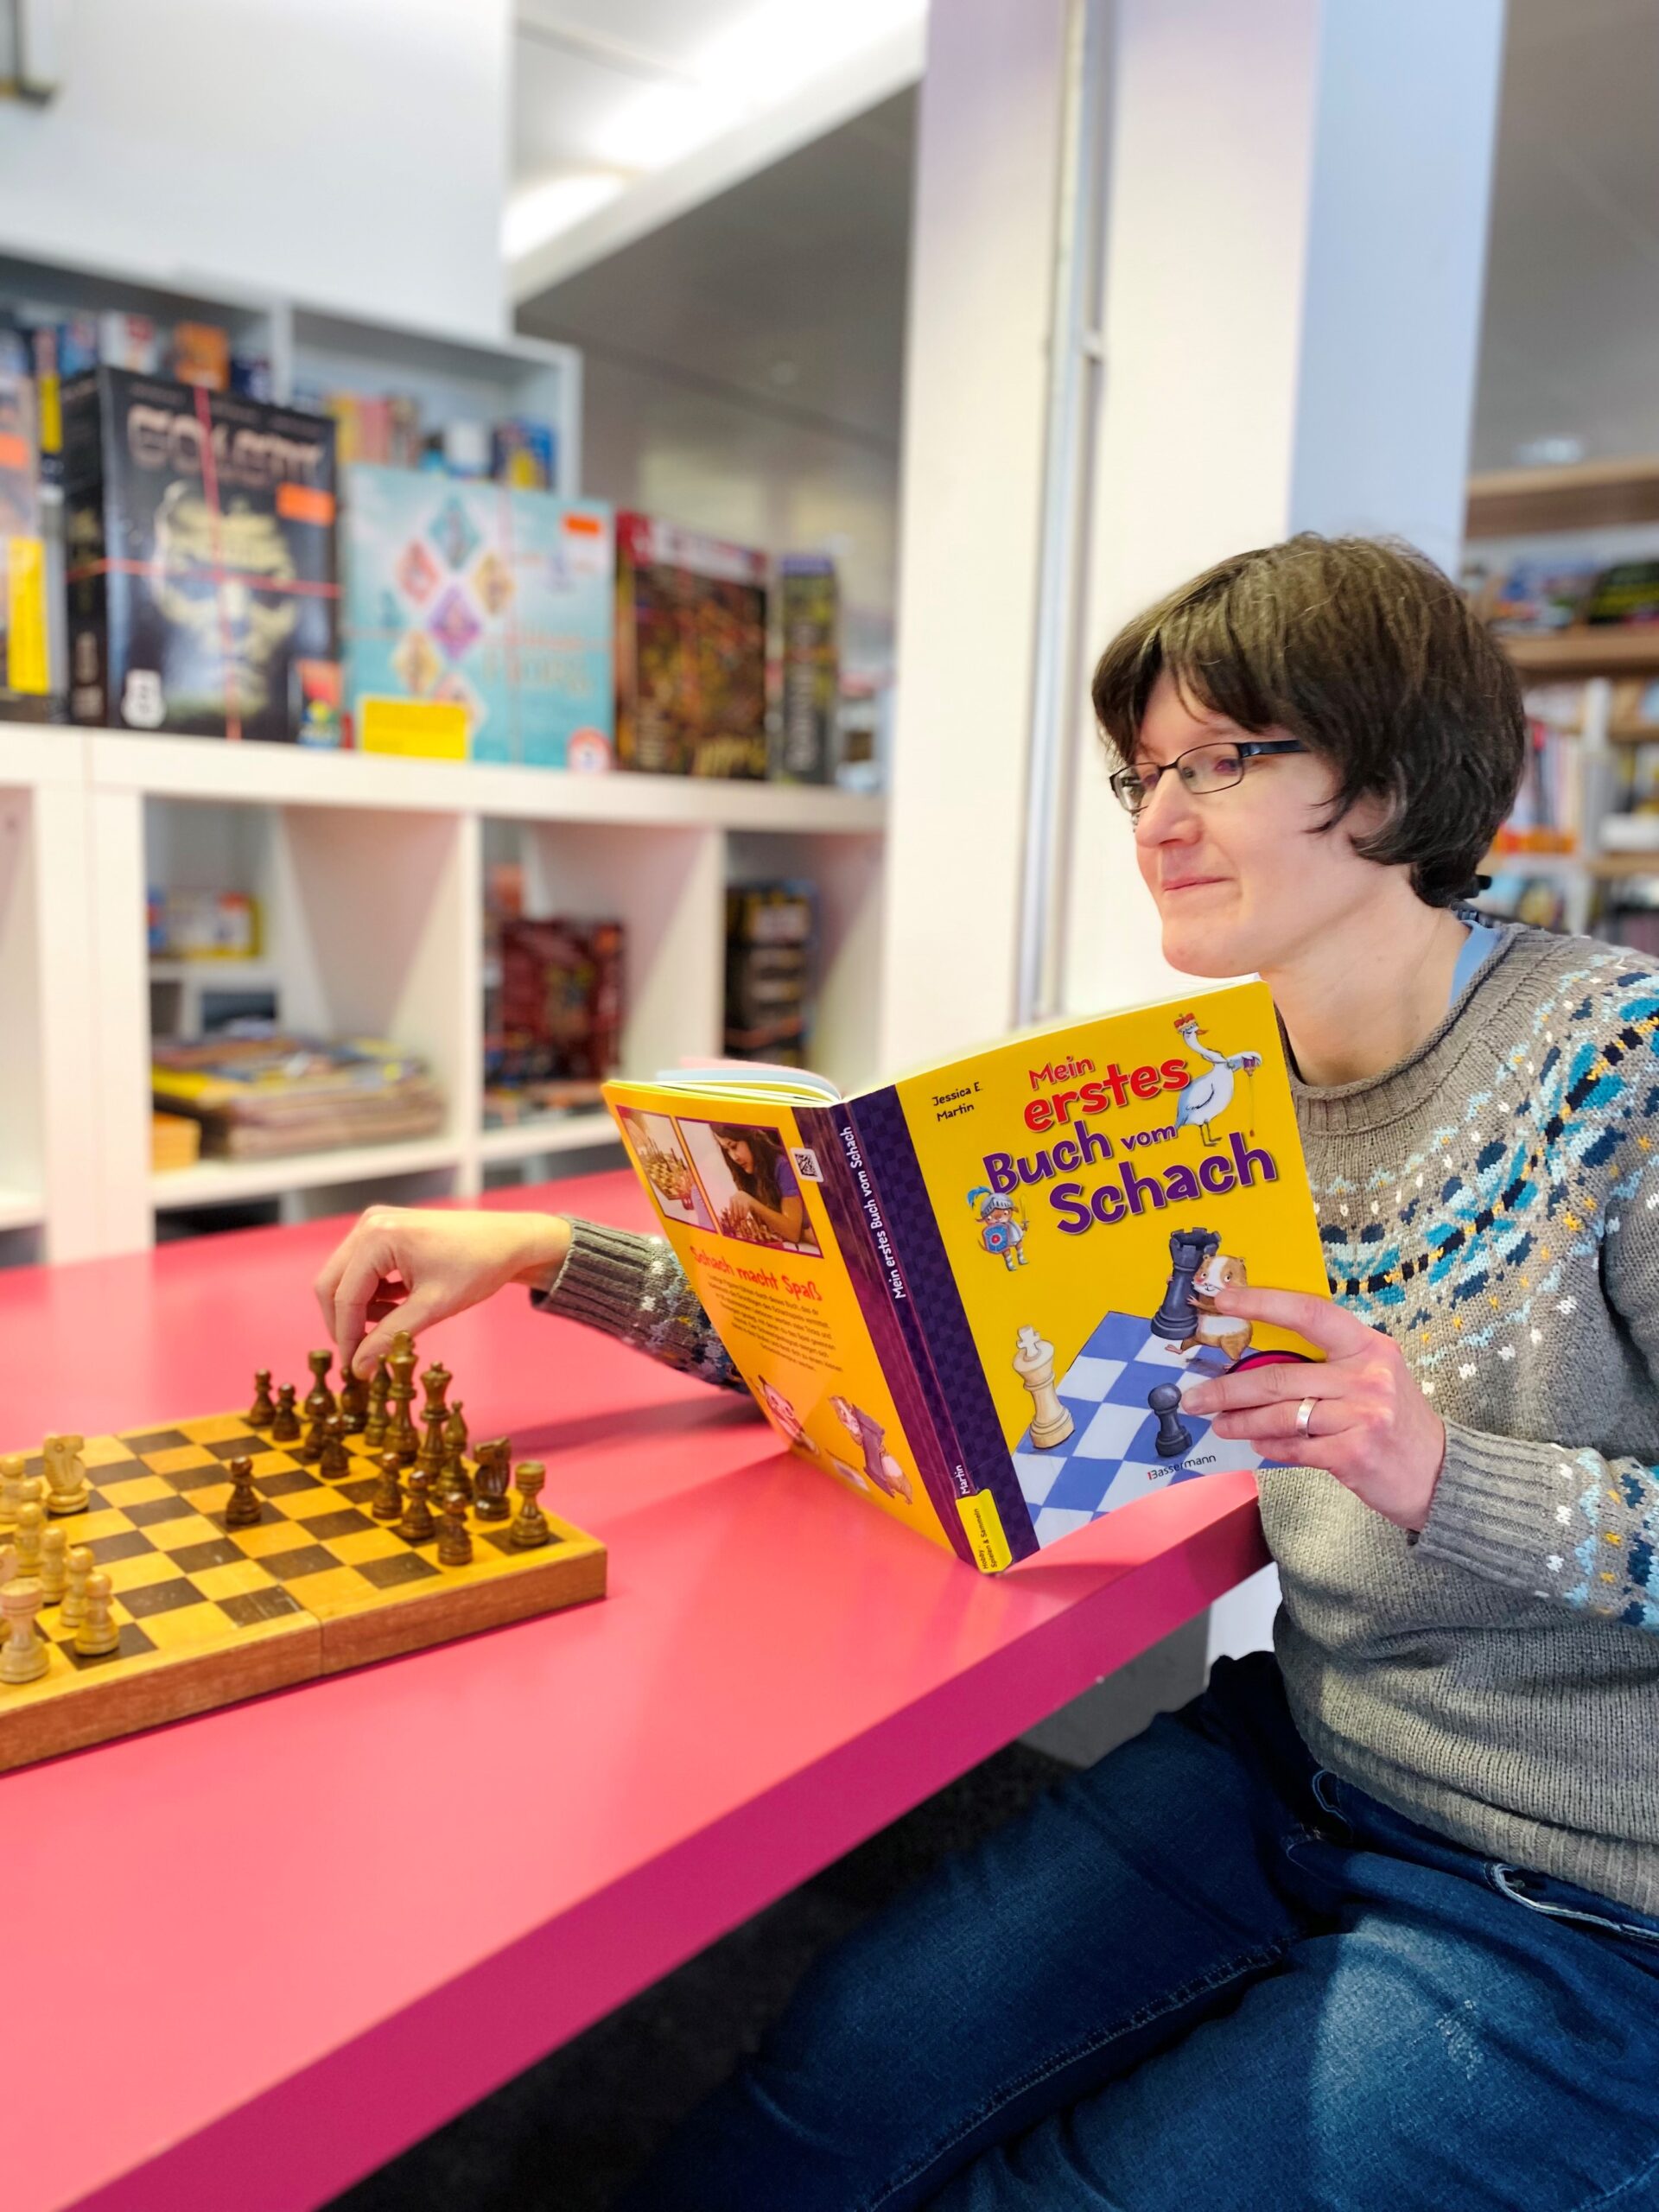 Frau spielt Schach und liest dabei ein Fachbuch für Spielanleitungen.